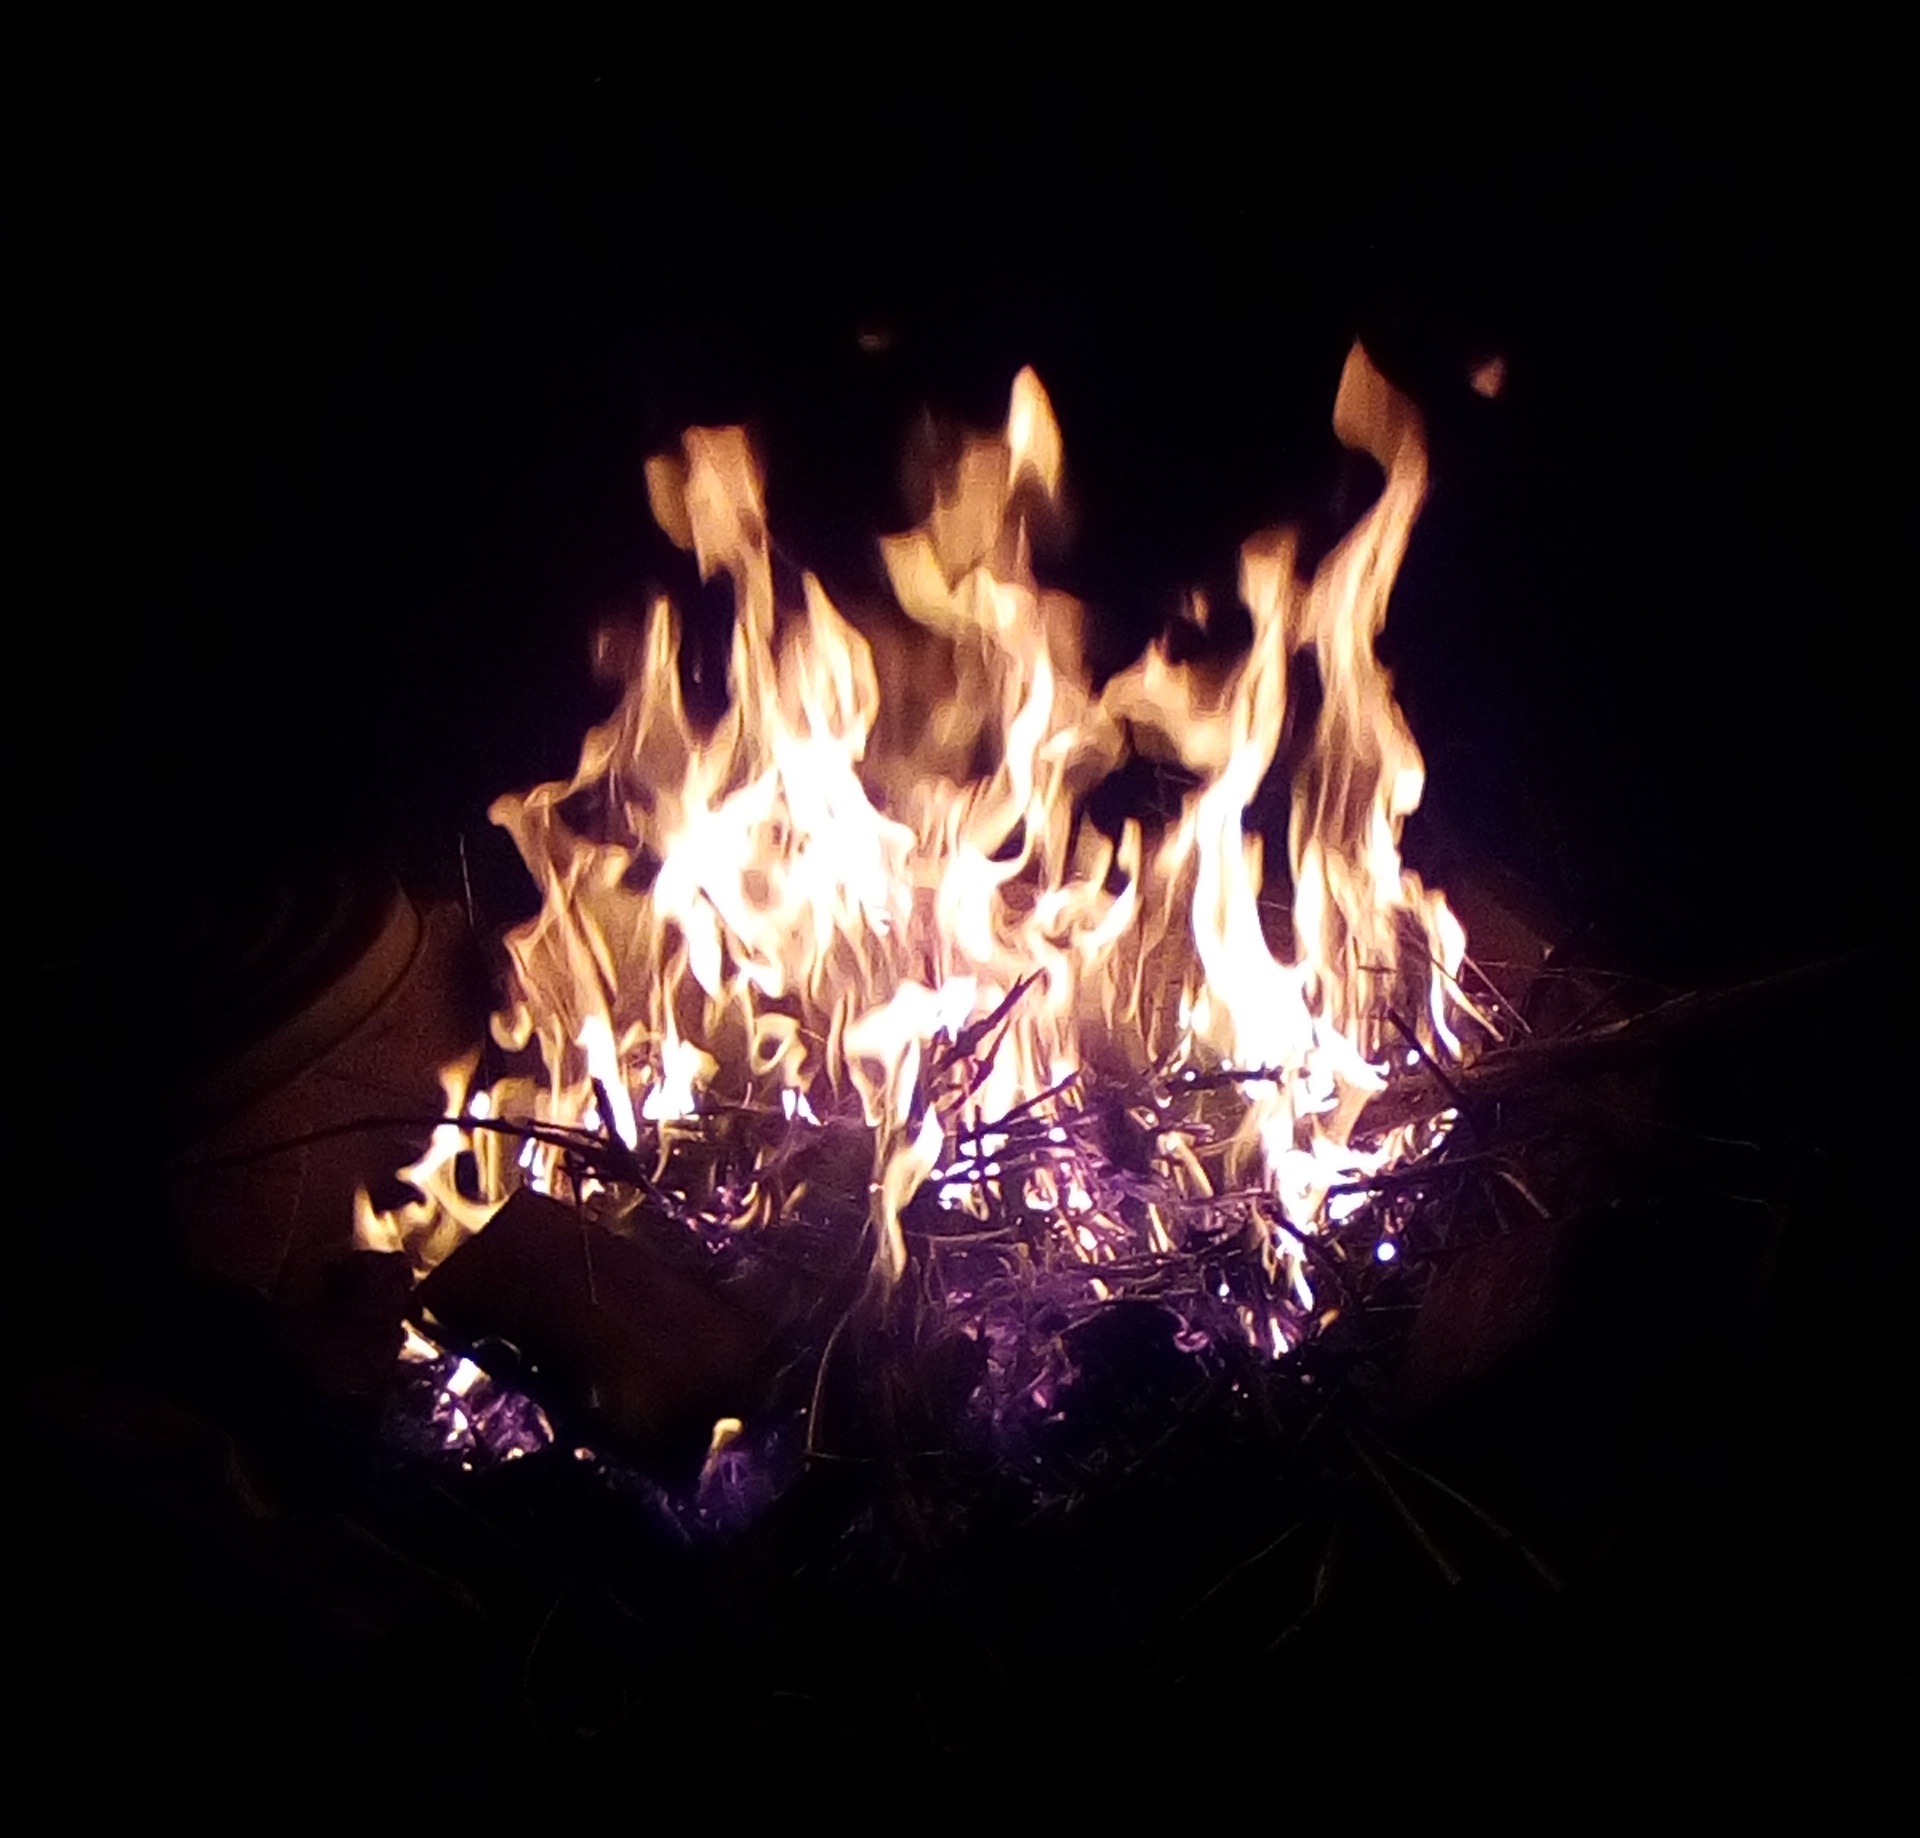 Feuer, eine Kraft der 4 Elemente
Foto: A. Pooch